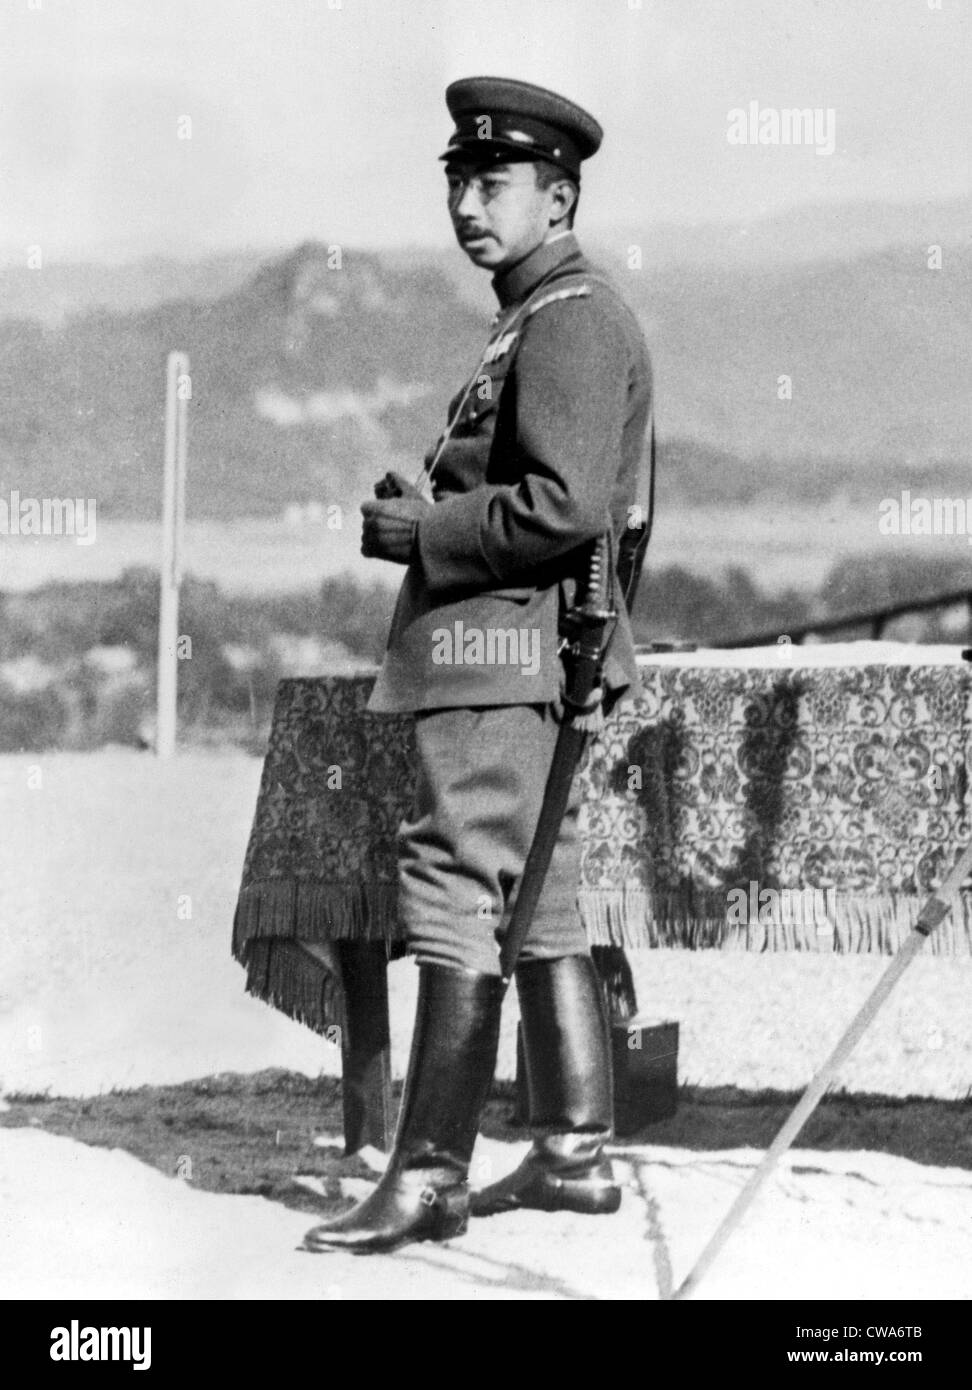 JAPANISCHE Kaiser im Krieg Manöver seiner kaiserlichen Majestät Kaiser Hirohito von Japan war ein Ineterested Zuschauer während der Stockfoto